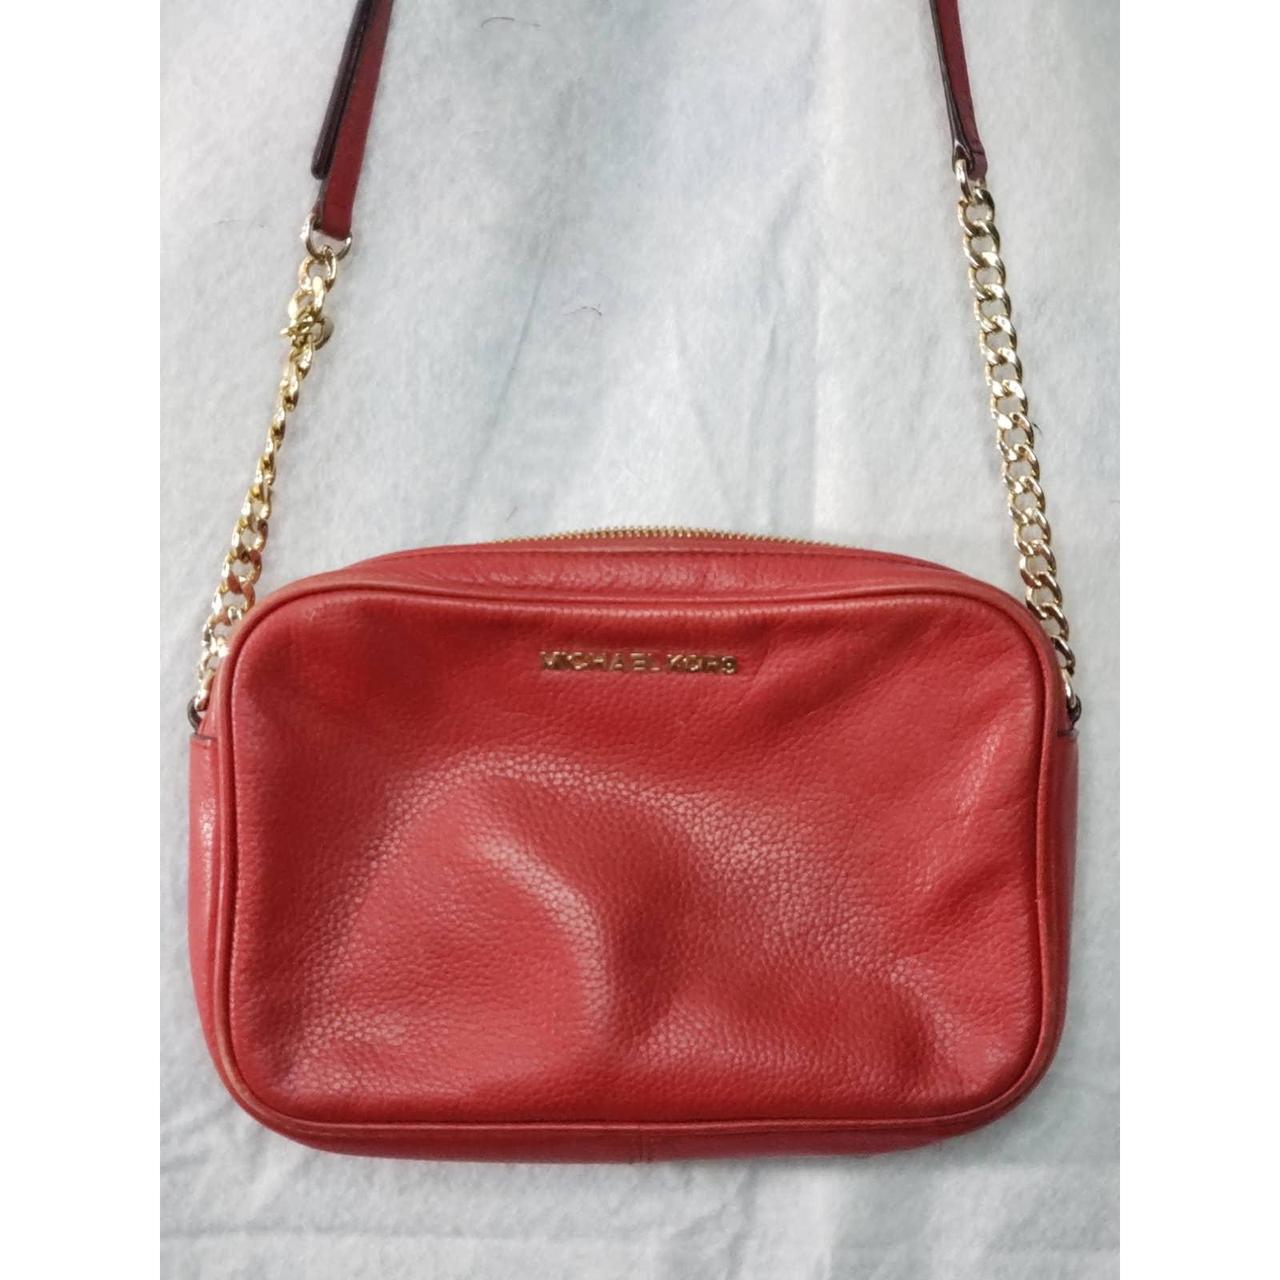 Michael Kors Trisha Pebbled Leather Large Shoulder Bag Purse | eBay